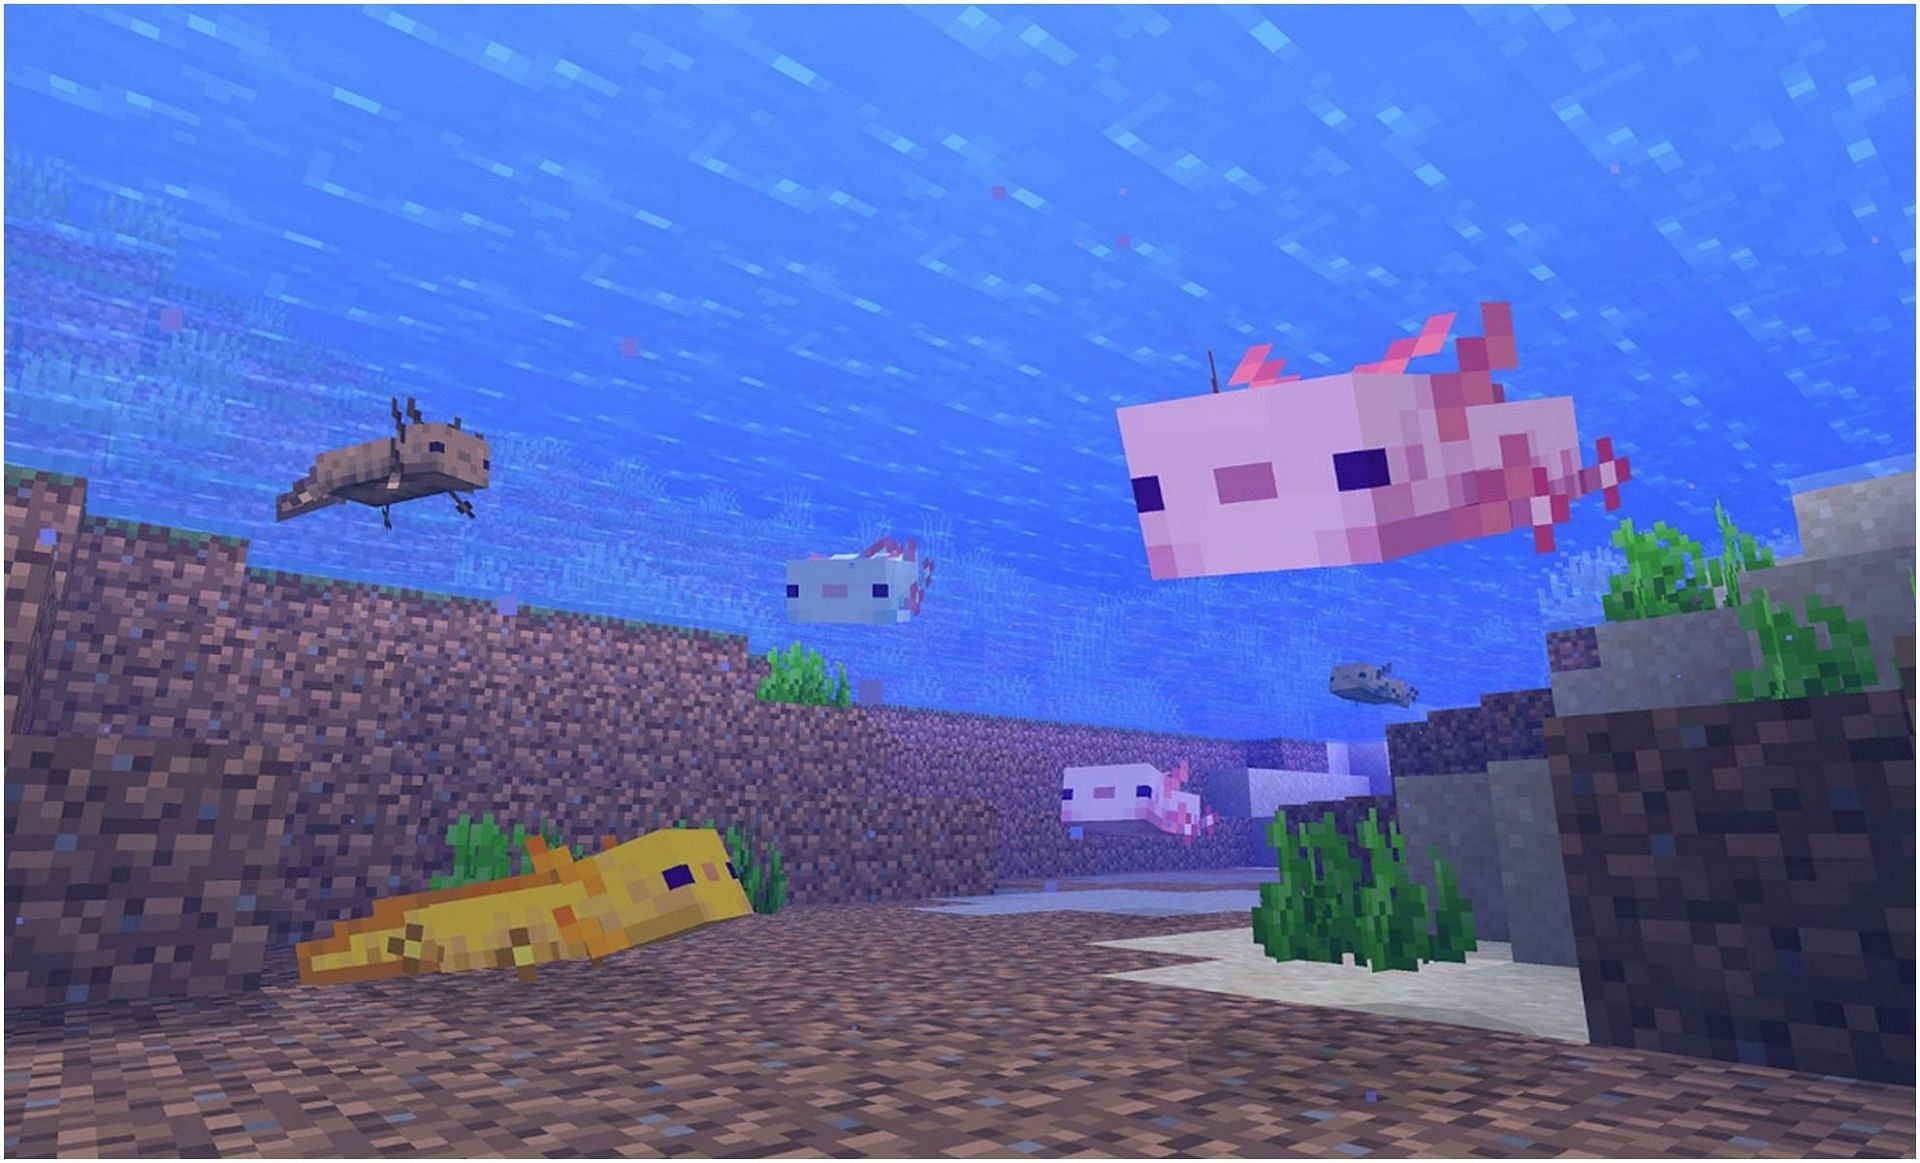 Axolotls in Minecraft (Image via Minecraft)